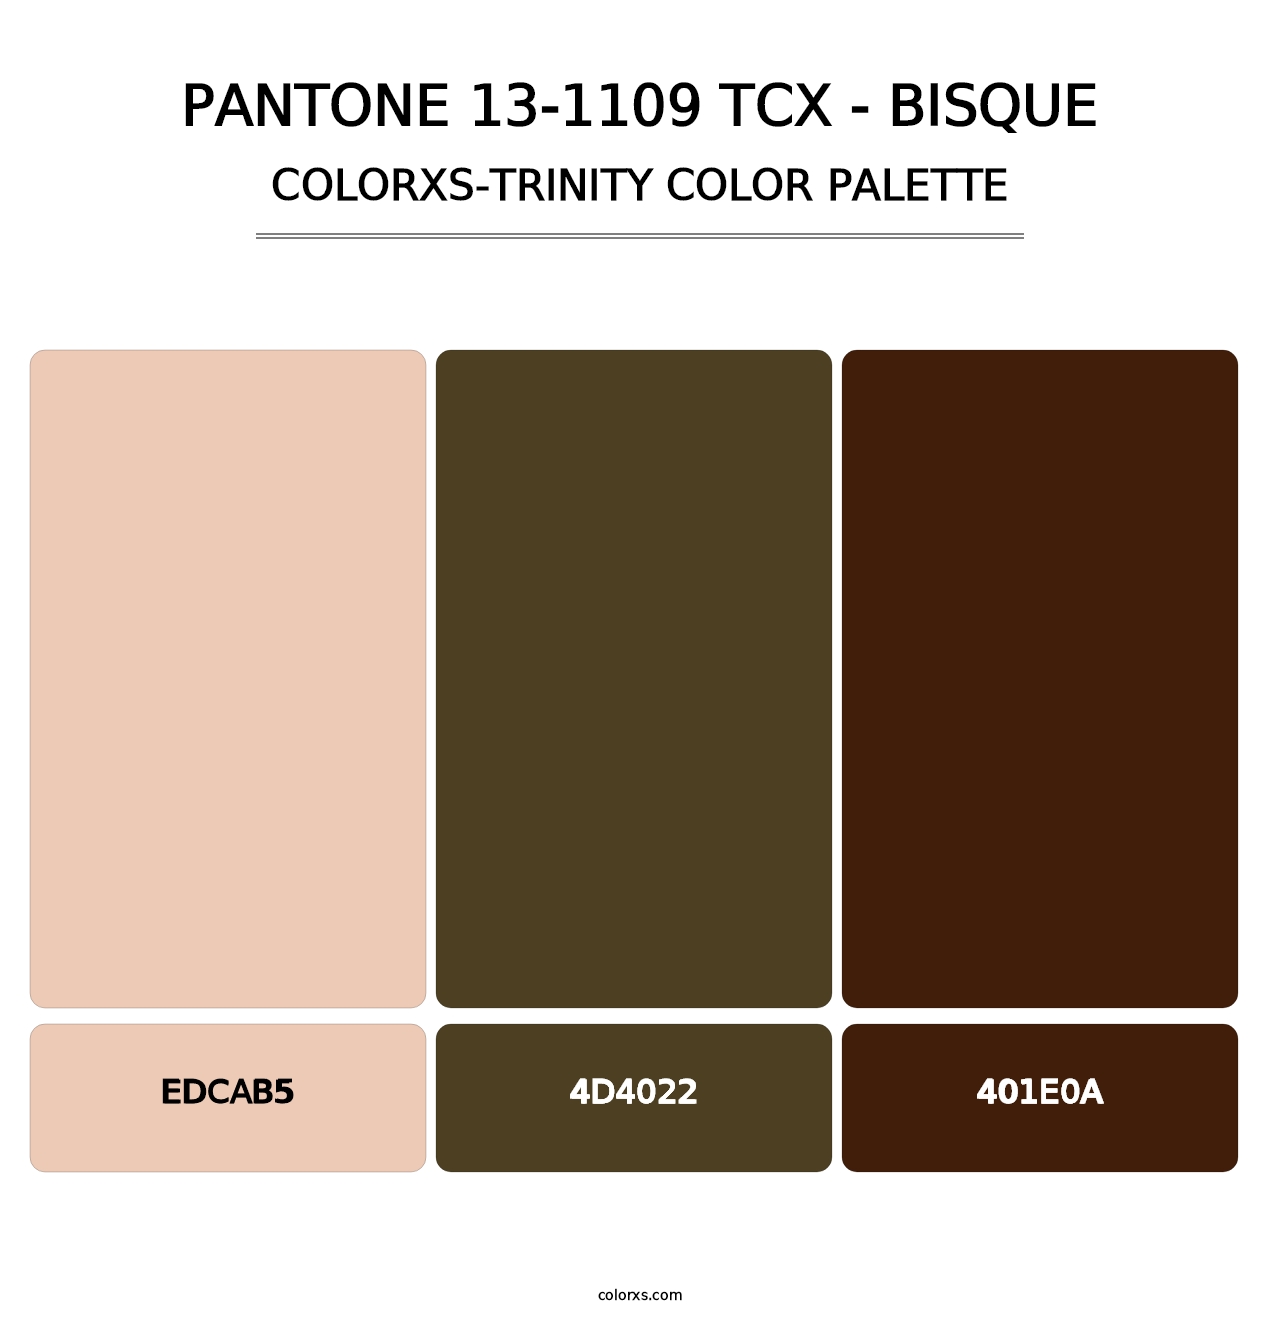 PANTONE 13-1109 TCX - Bisque - Colorxs Trinity Palette